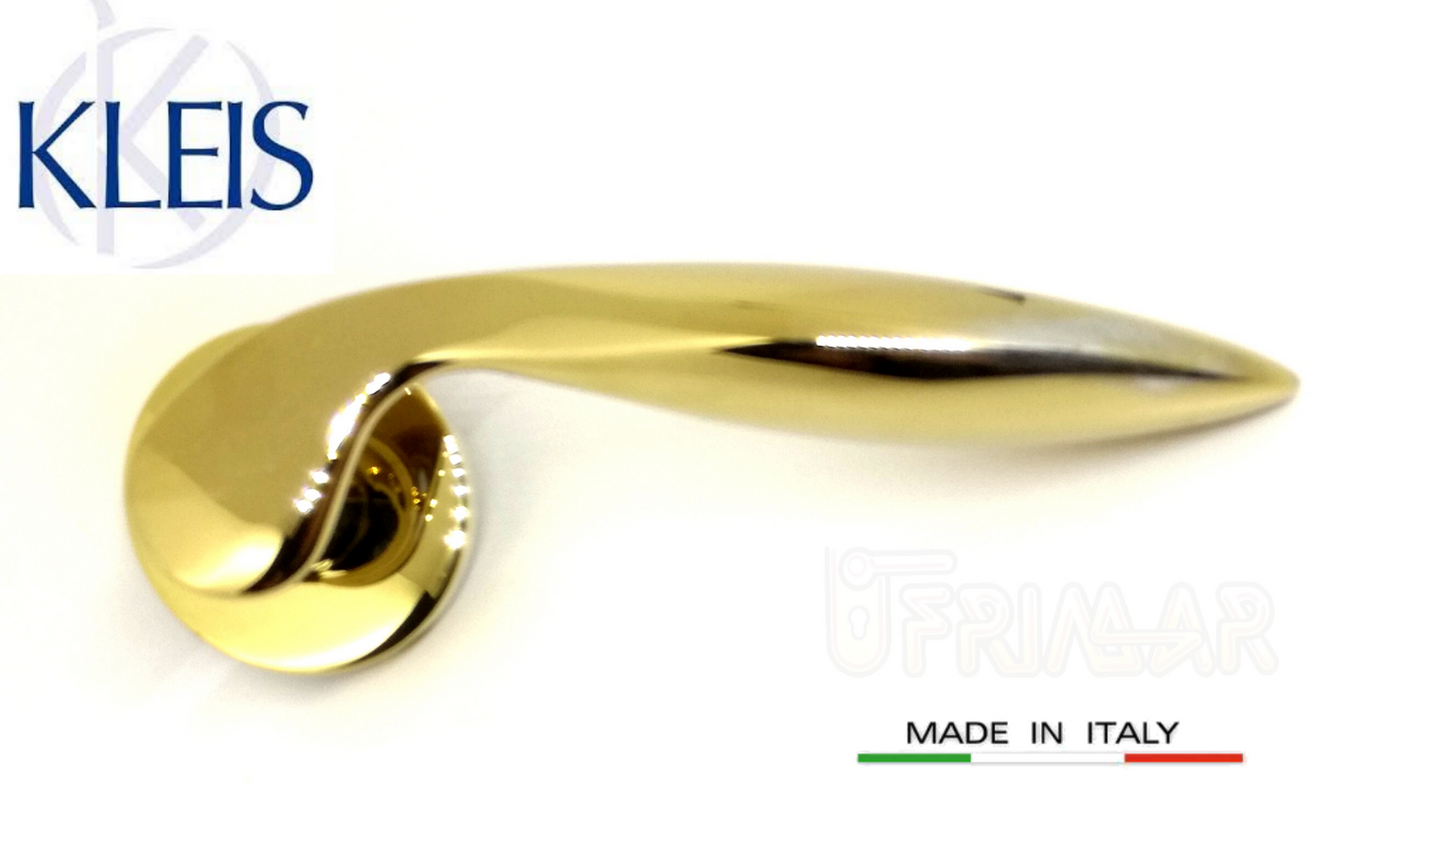 Maniglia KLEIS SIRYA art. 00C1102 Oro PVD maniglie per porte RDS porte interne